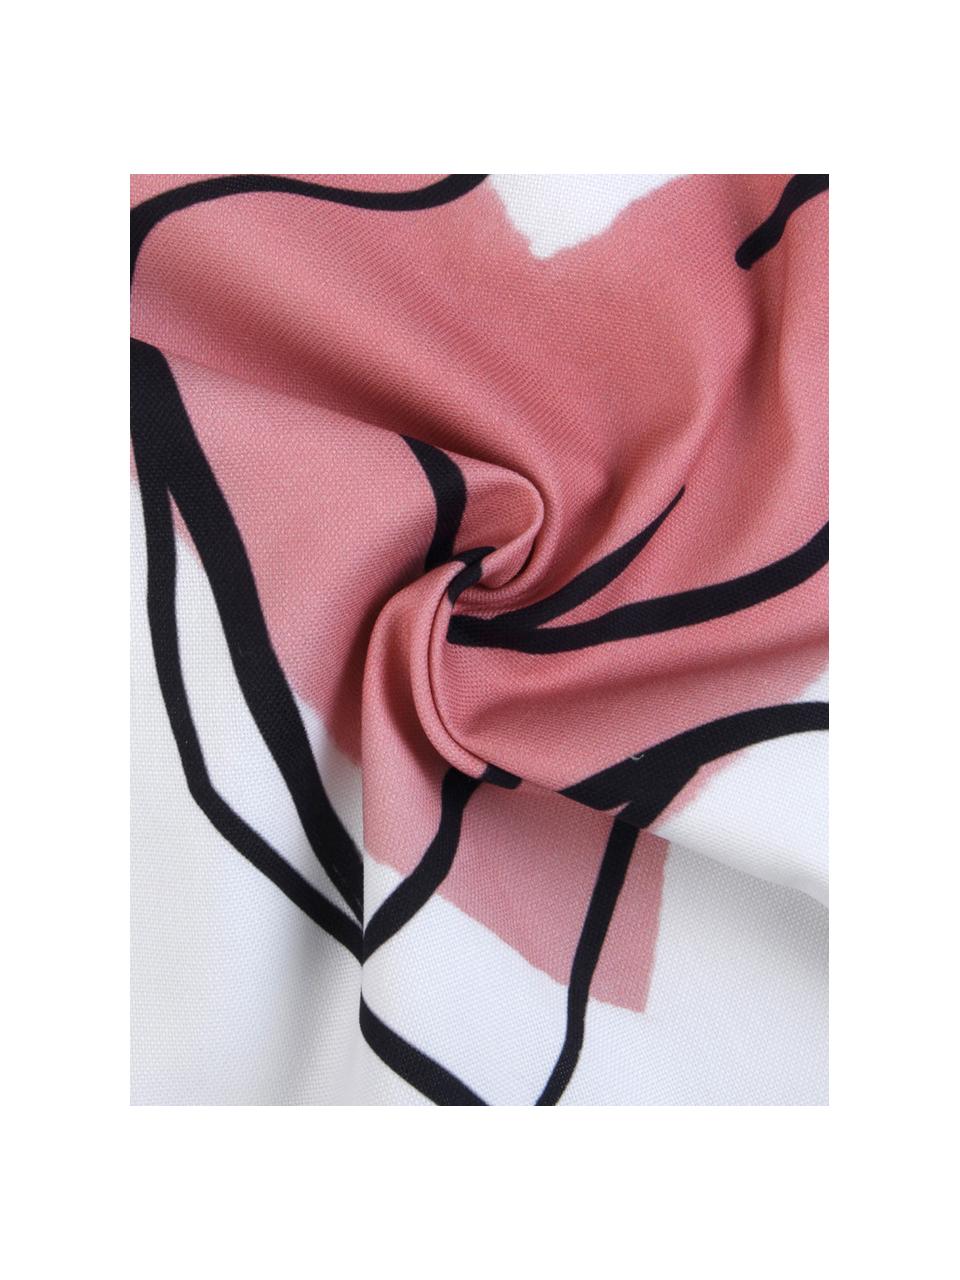 Federa arredo di Kera Till Selfcare, 100% cotone, Bianco, rosa, nero, Larg. 40 x Lung. 40 cm